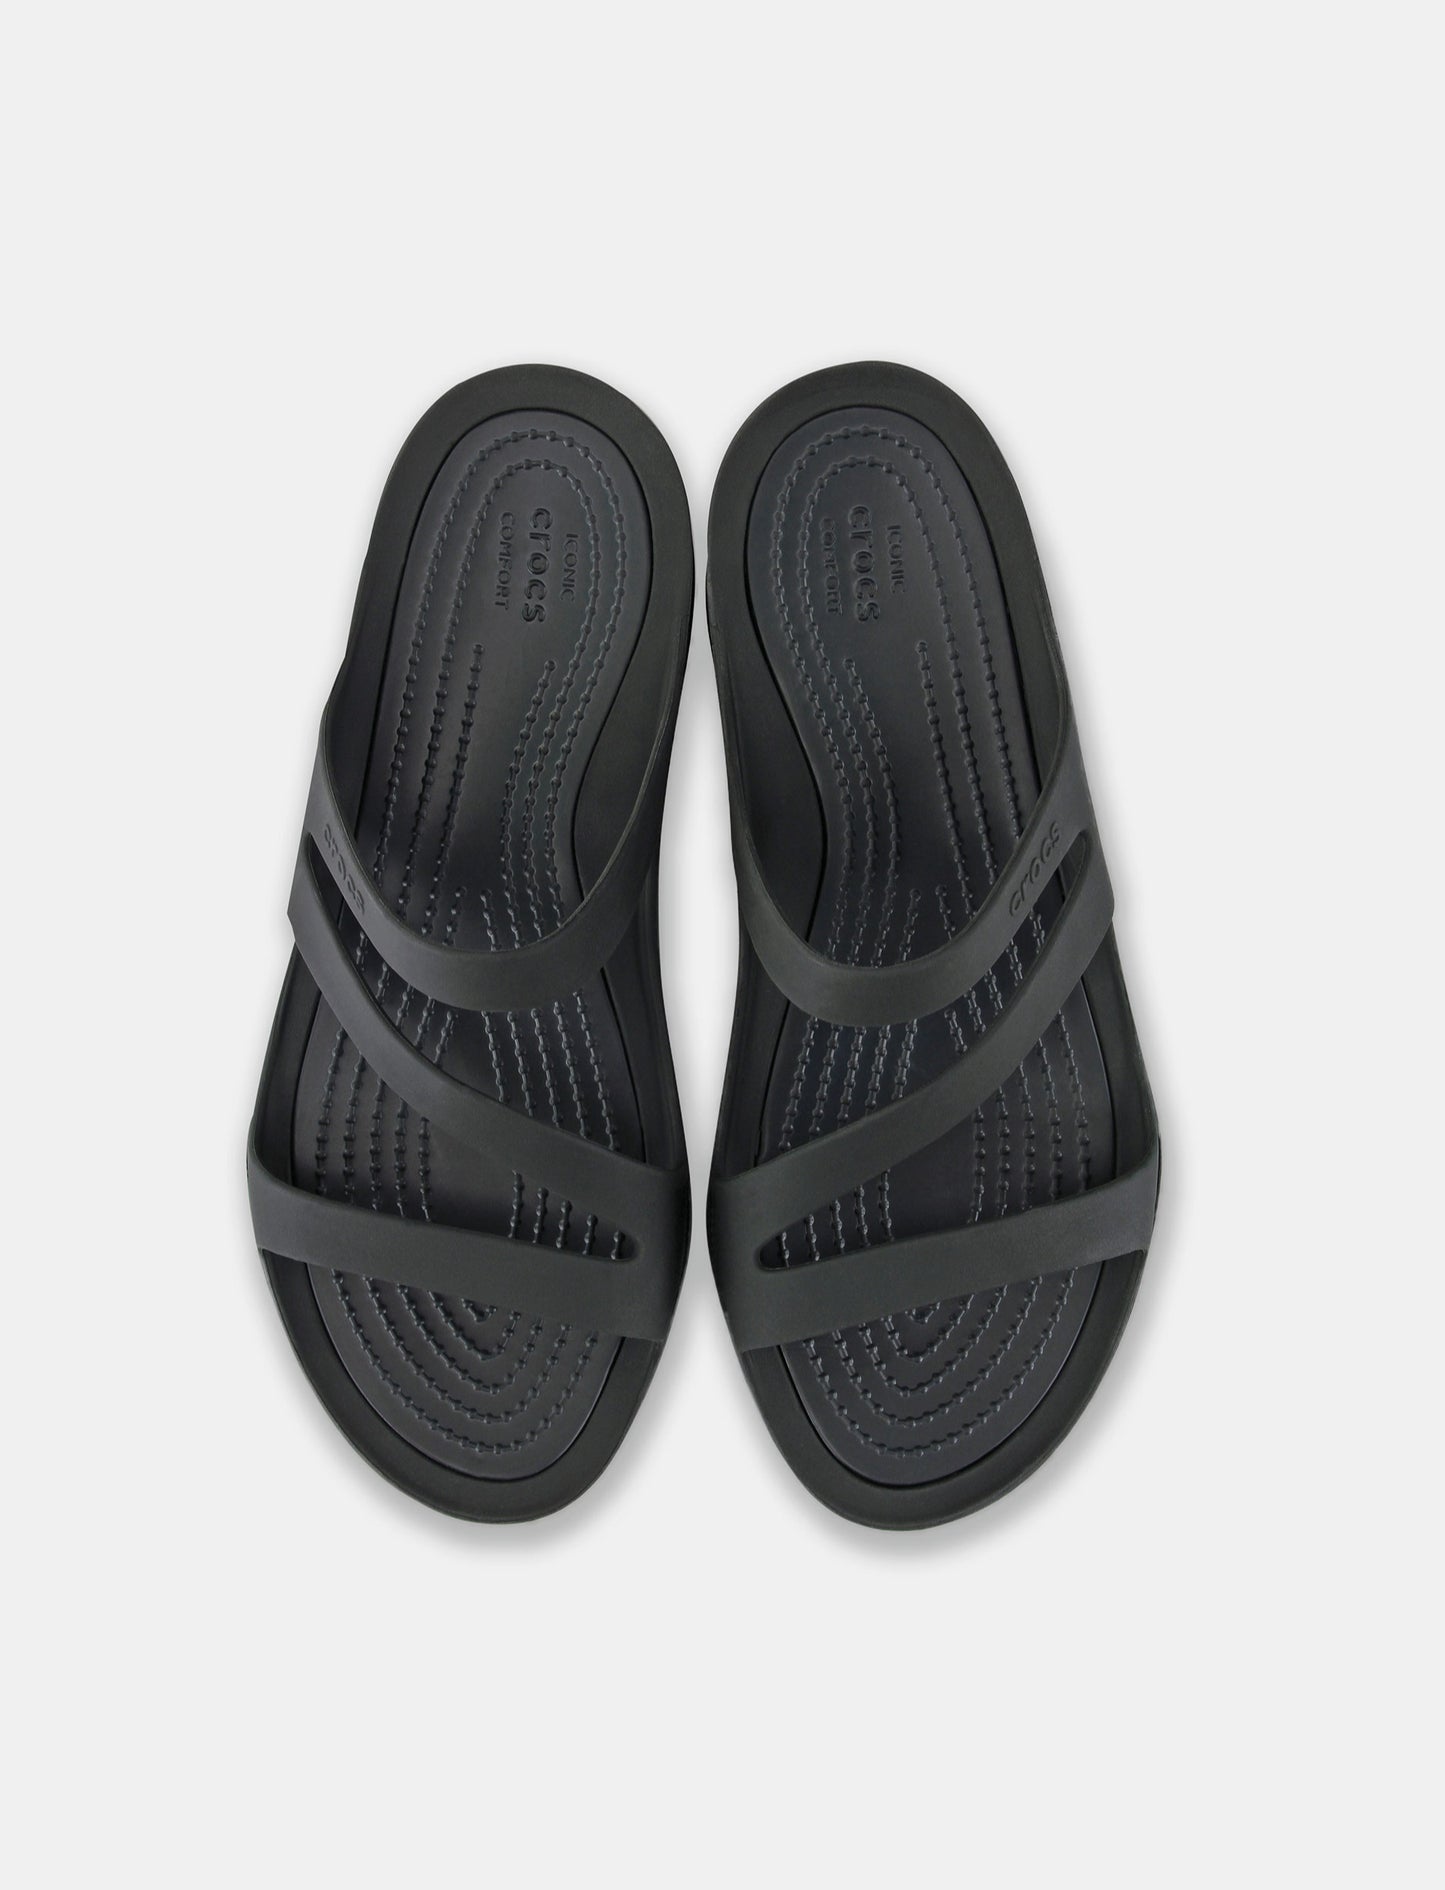 Crocs Swiftwater Sandal - כפכפים לנשים קרוקס רצועות